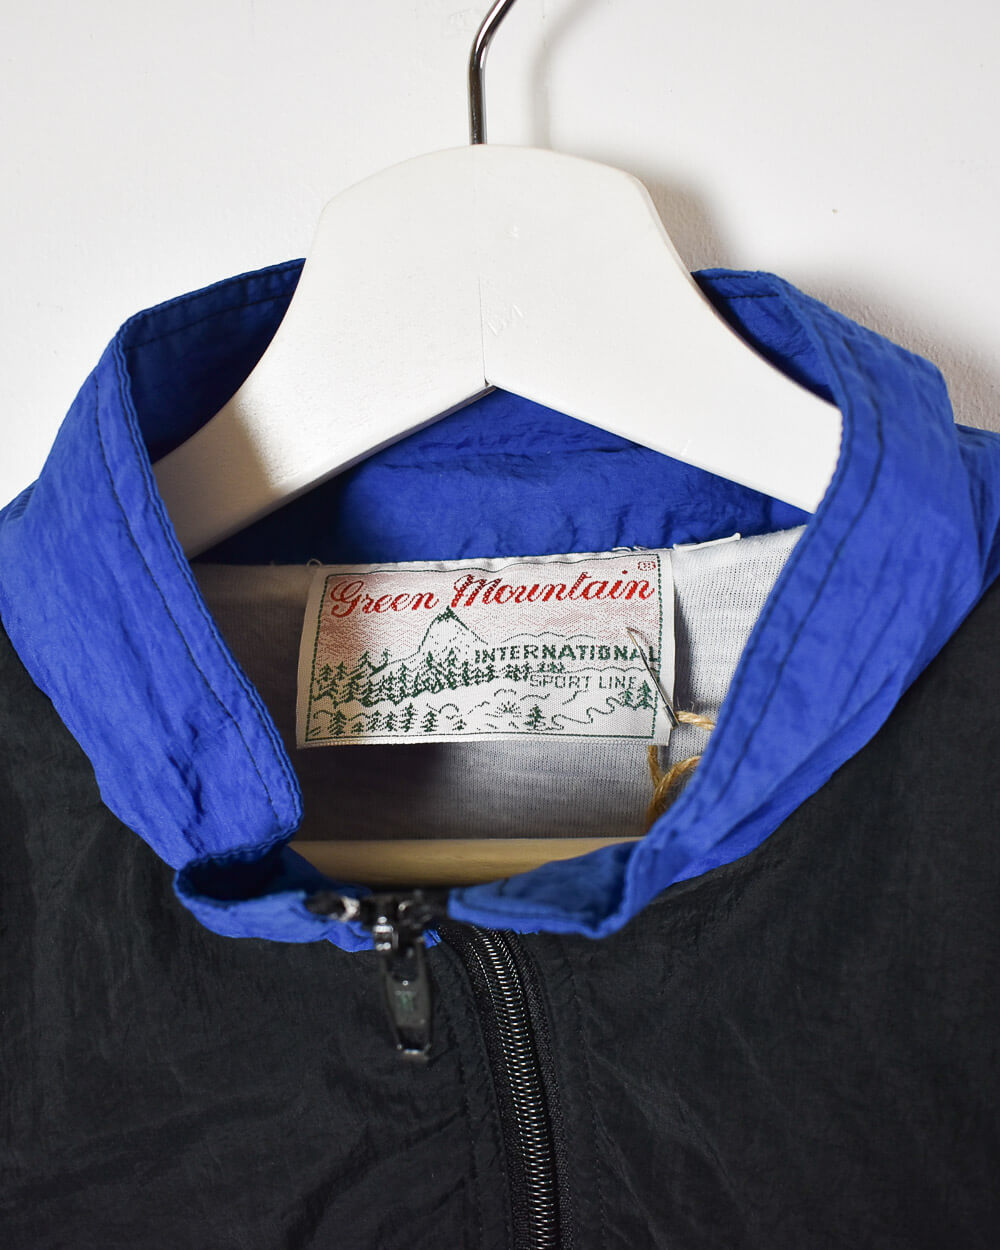 Blue Vintage Festival Shell Jacket - Large